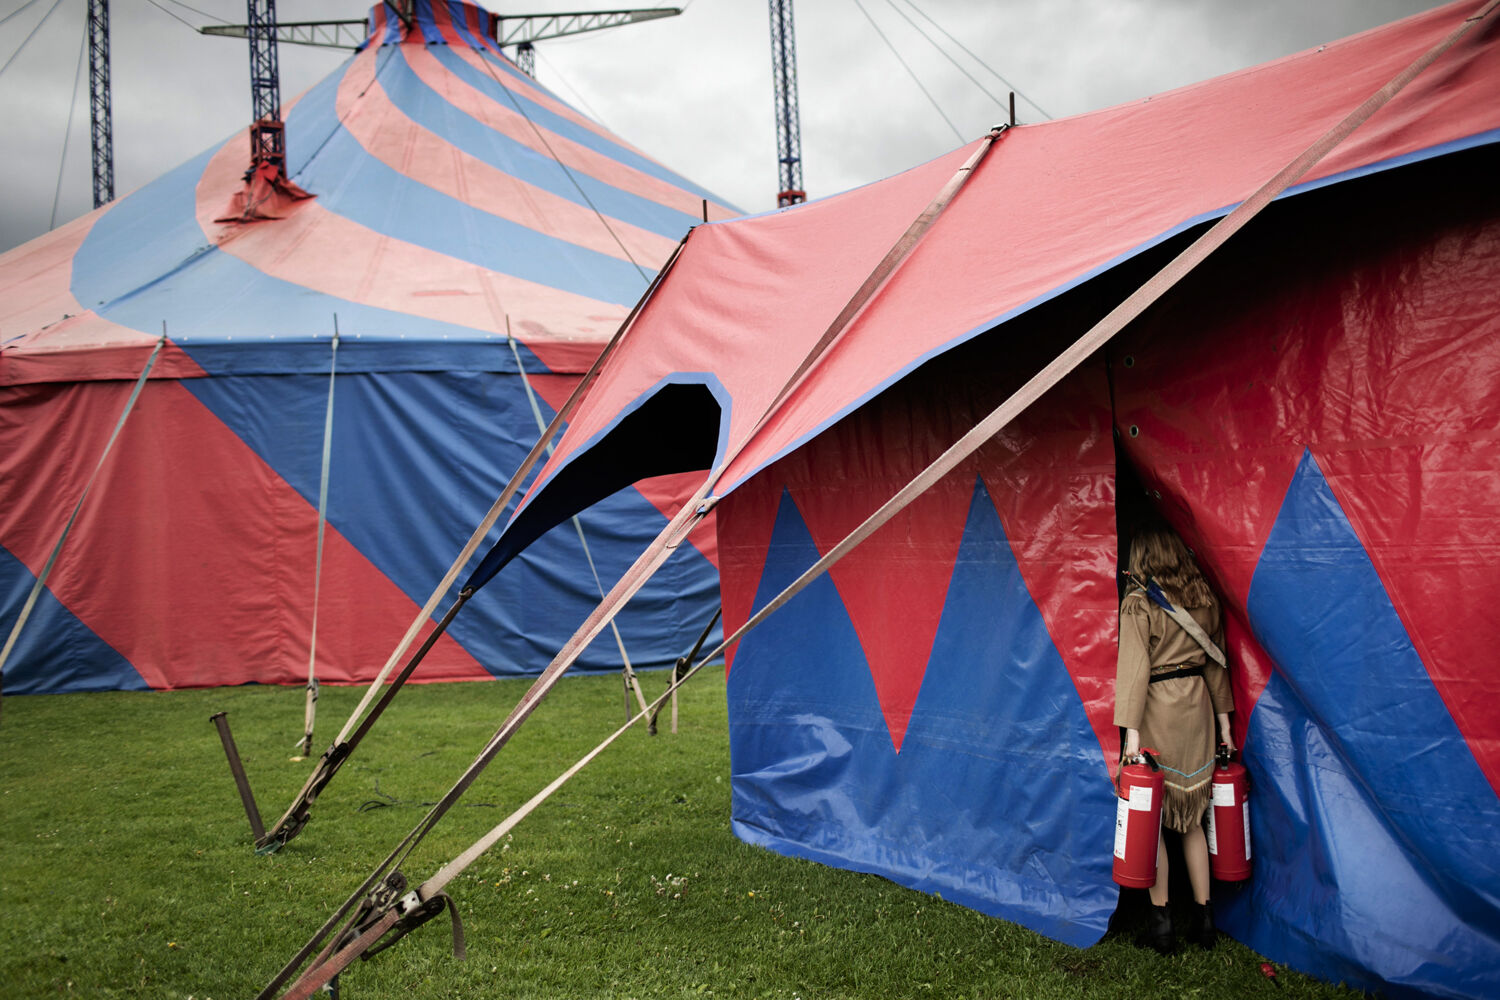 Hver dag rykker cirkus til en ny by. Her flytter Nynne brandslukkere ind i teltet. Foto: Tor birk trads